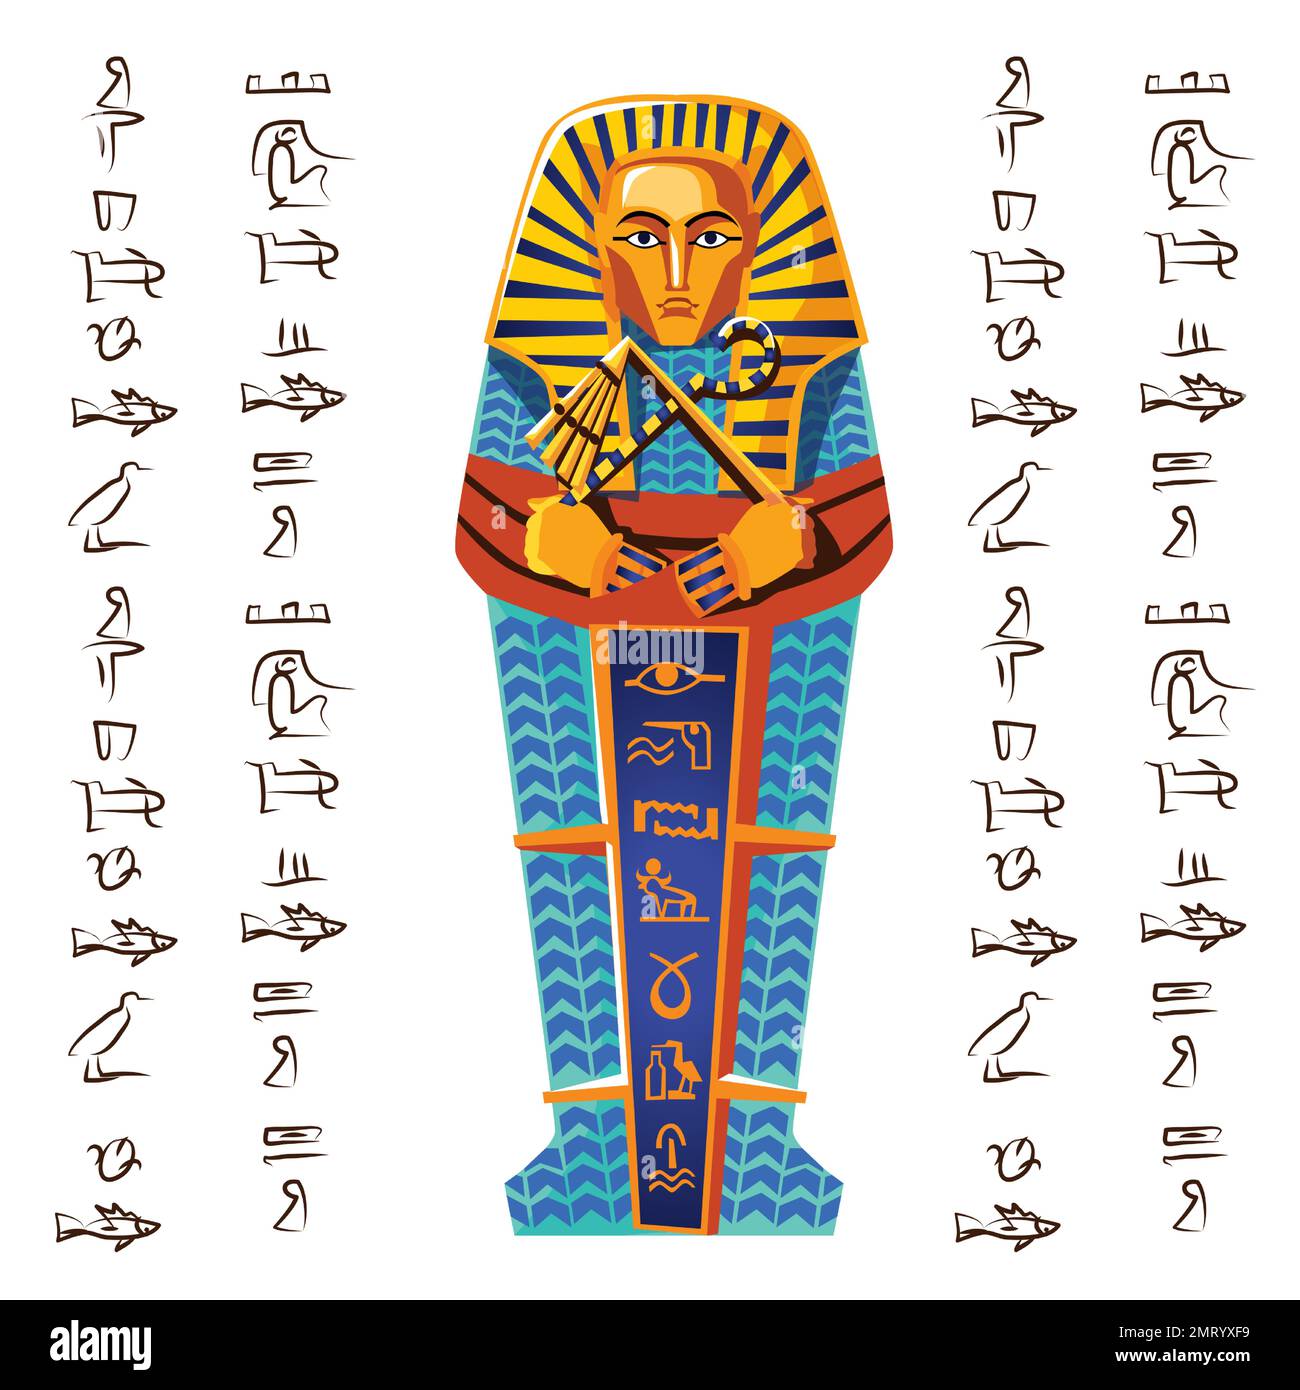 Alte ägyptische Vektorgrafik. Ägyptisches Kultursymbol, goldener oder Stein pharao Sarkophag mit Hieroglyphen, Teil eines religiösen Kult der Toten, isoliert auf weißem Hintergrund, Draufsicht Stock Vektor